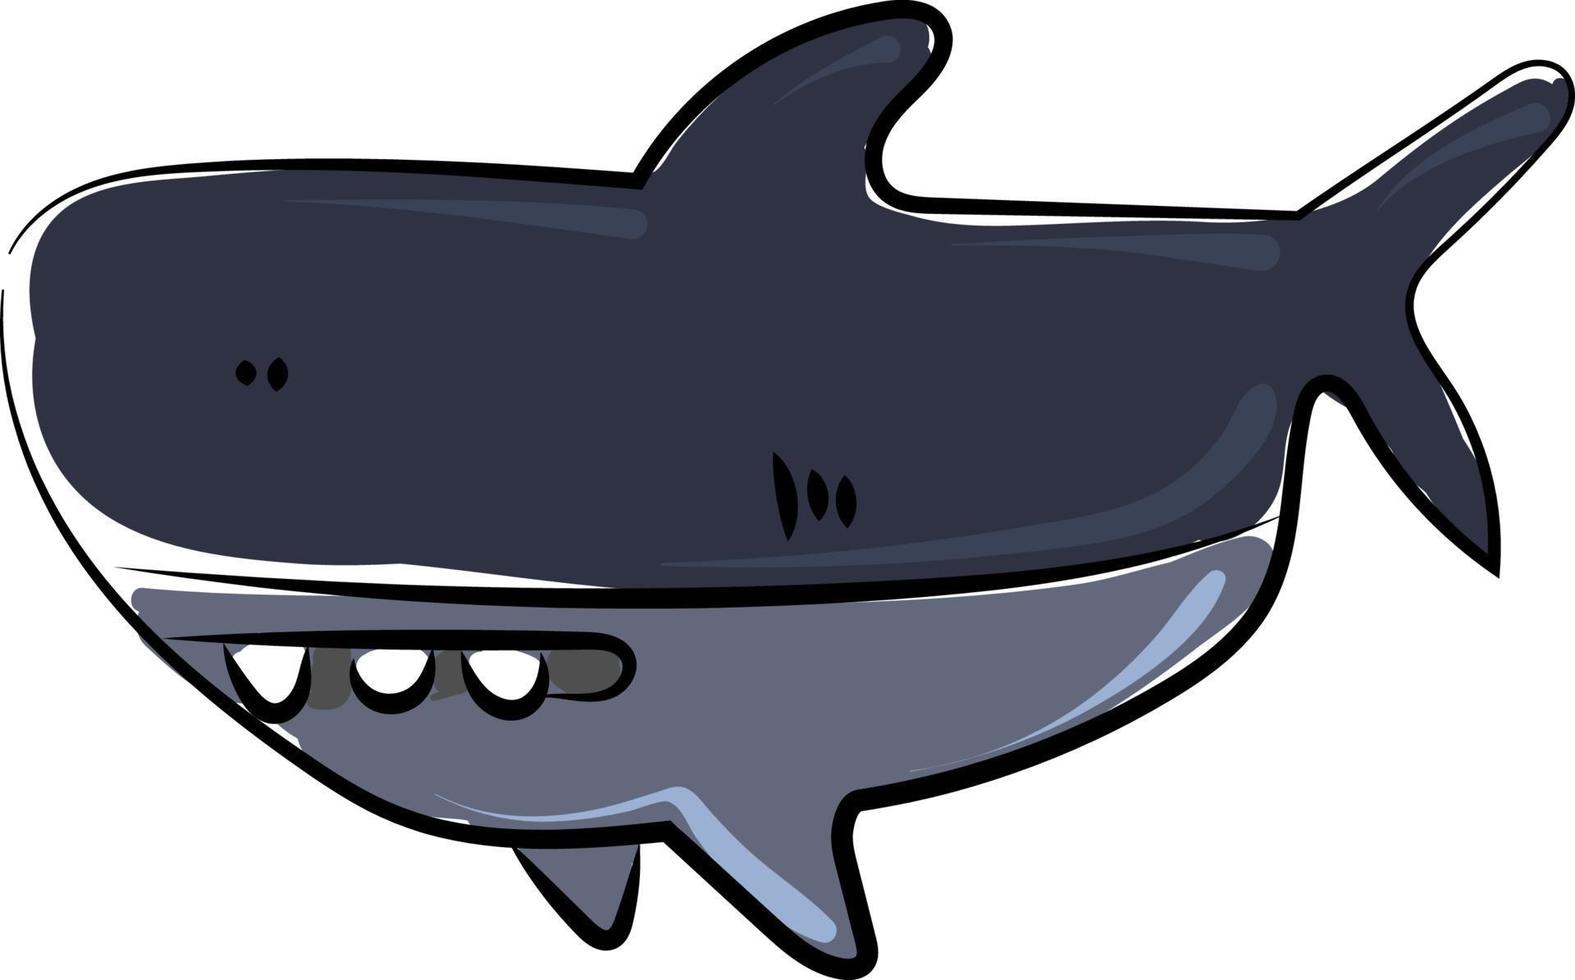 Funny shark, illustration, vector on white background.